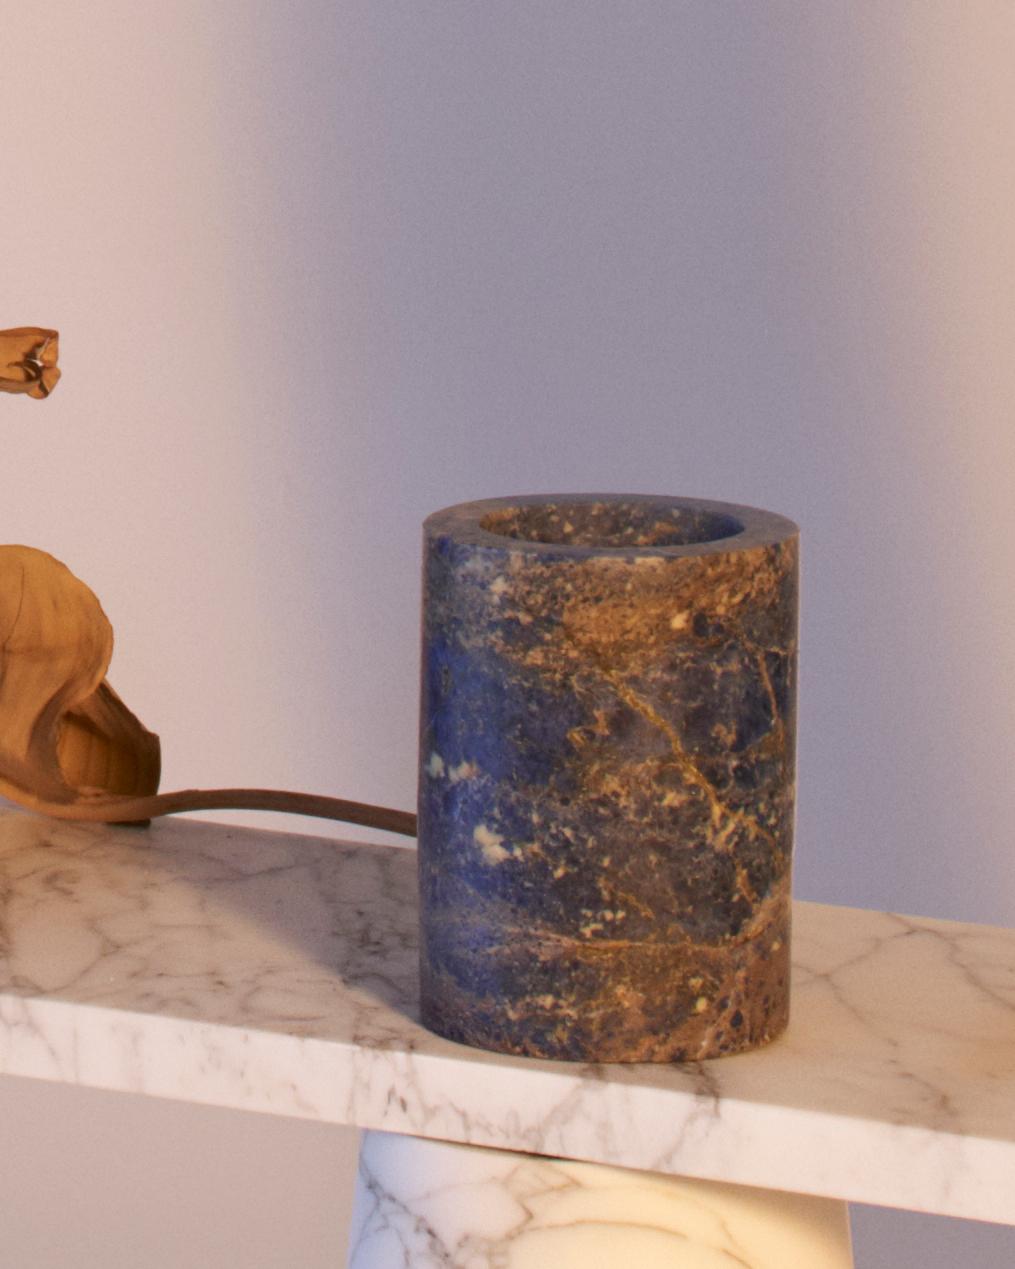 Blumenvase aus blauem Sodalith-Marmor, entworfen von Karen Chekerdjian, hergestellt in Italien
Auch in den Marmorsorten Red Levanto und Black Marquinia erhältlich
Dies ist ein Teil des Zubehörs der Inside Out Collection'S  - Vasen, Tische, Schalen,